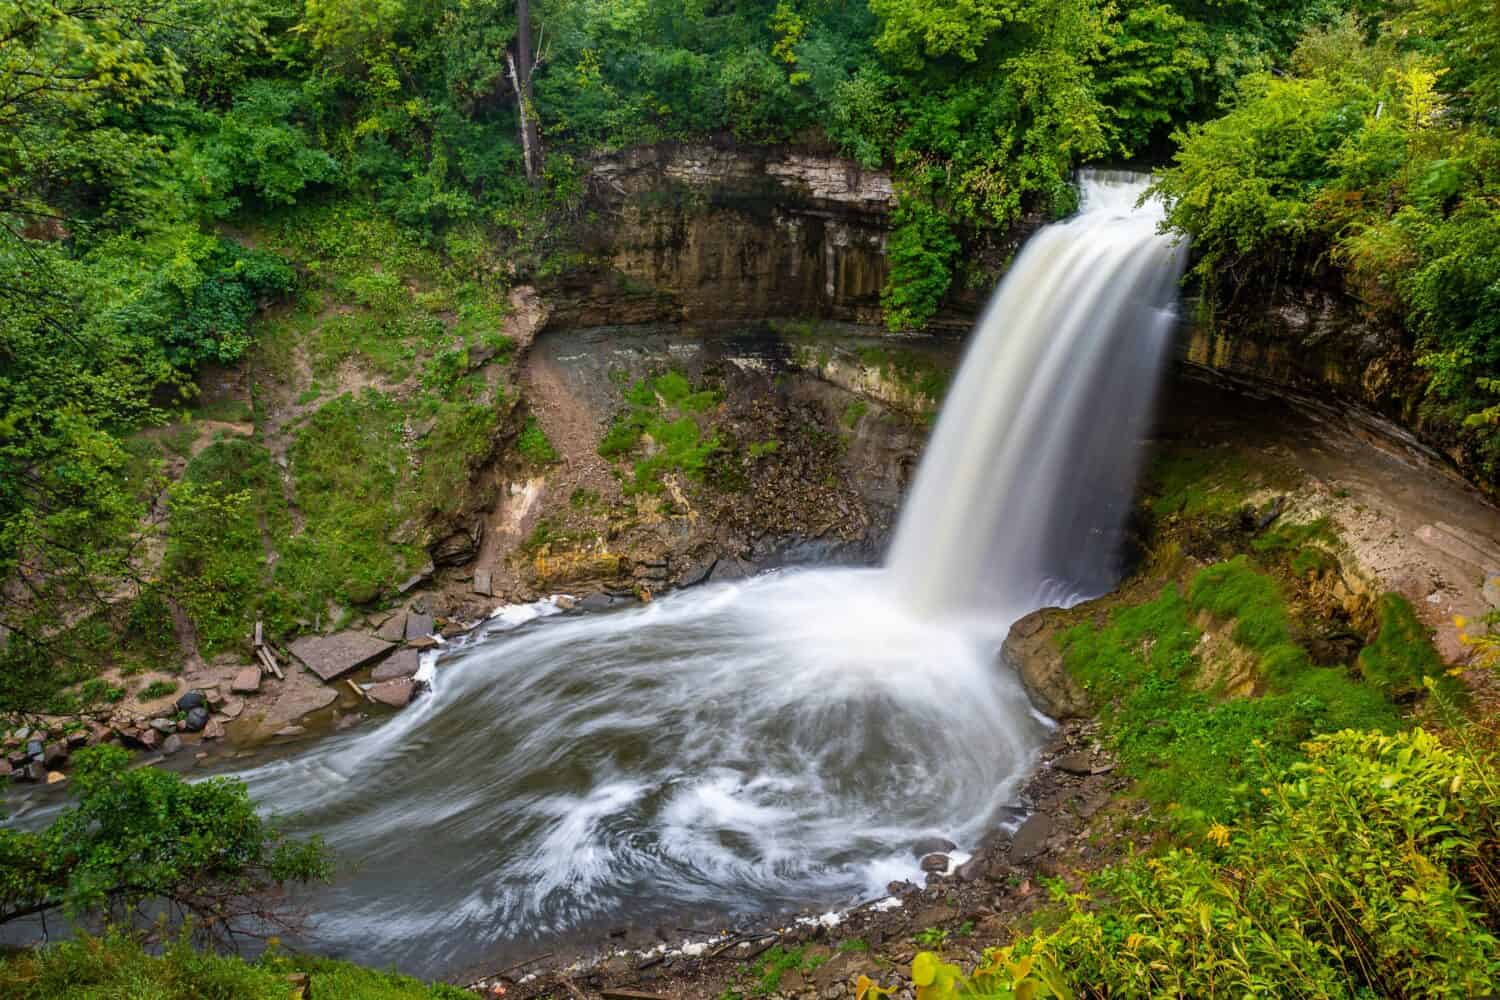 Minnehaha Falls in Minneapolis, Minnesota